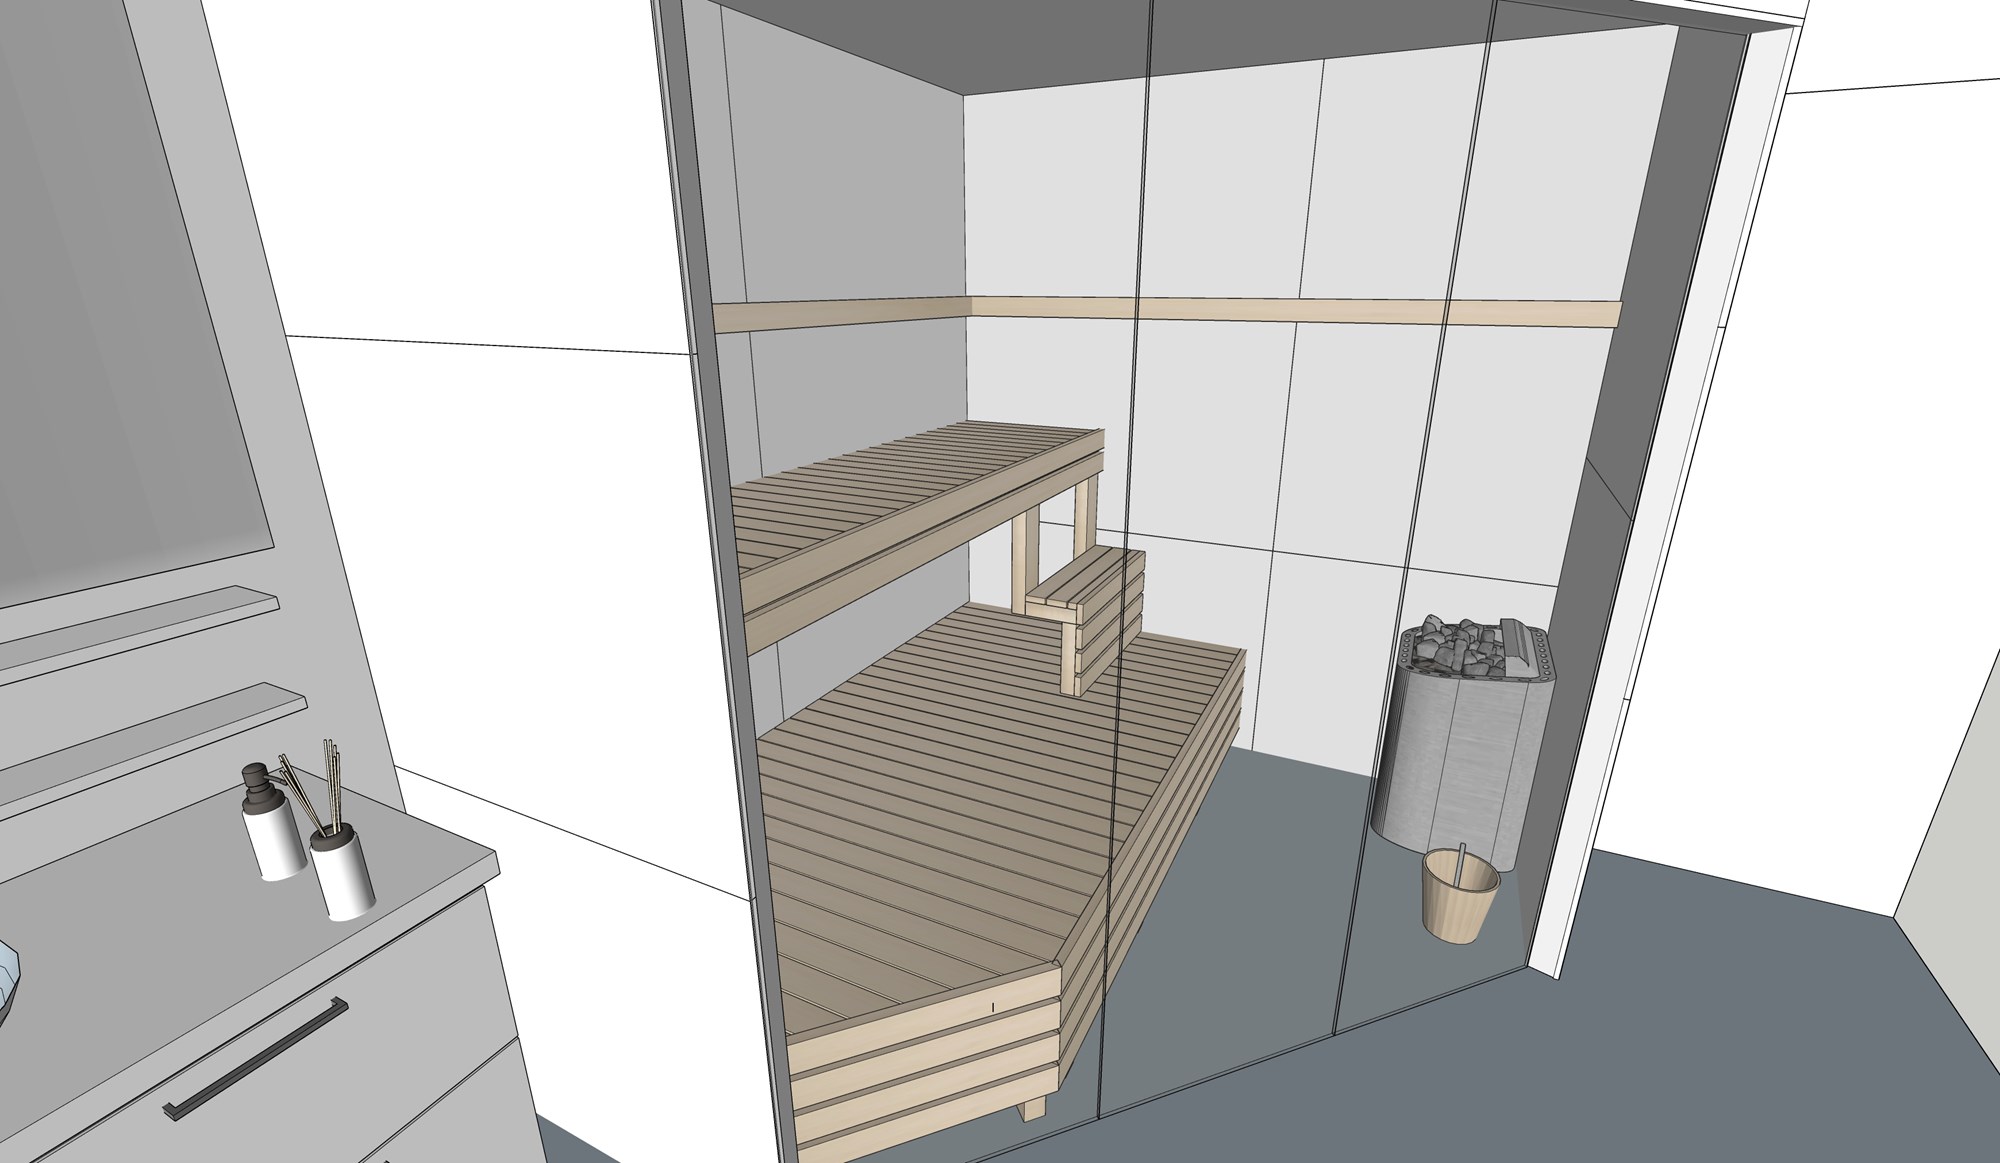 Bygge badstue på eksisterande bad i hus fra 2015 - Enklere trapp.jpg - Oddgeirno